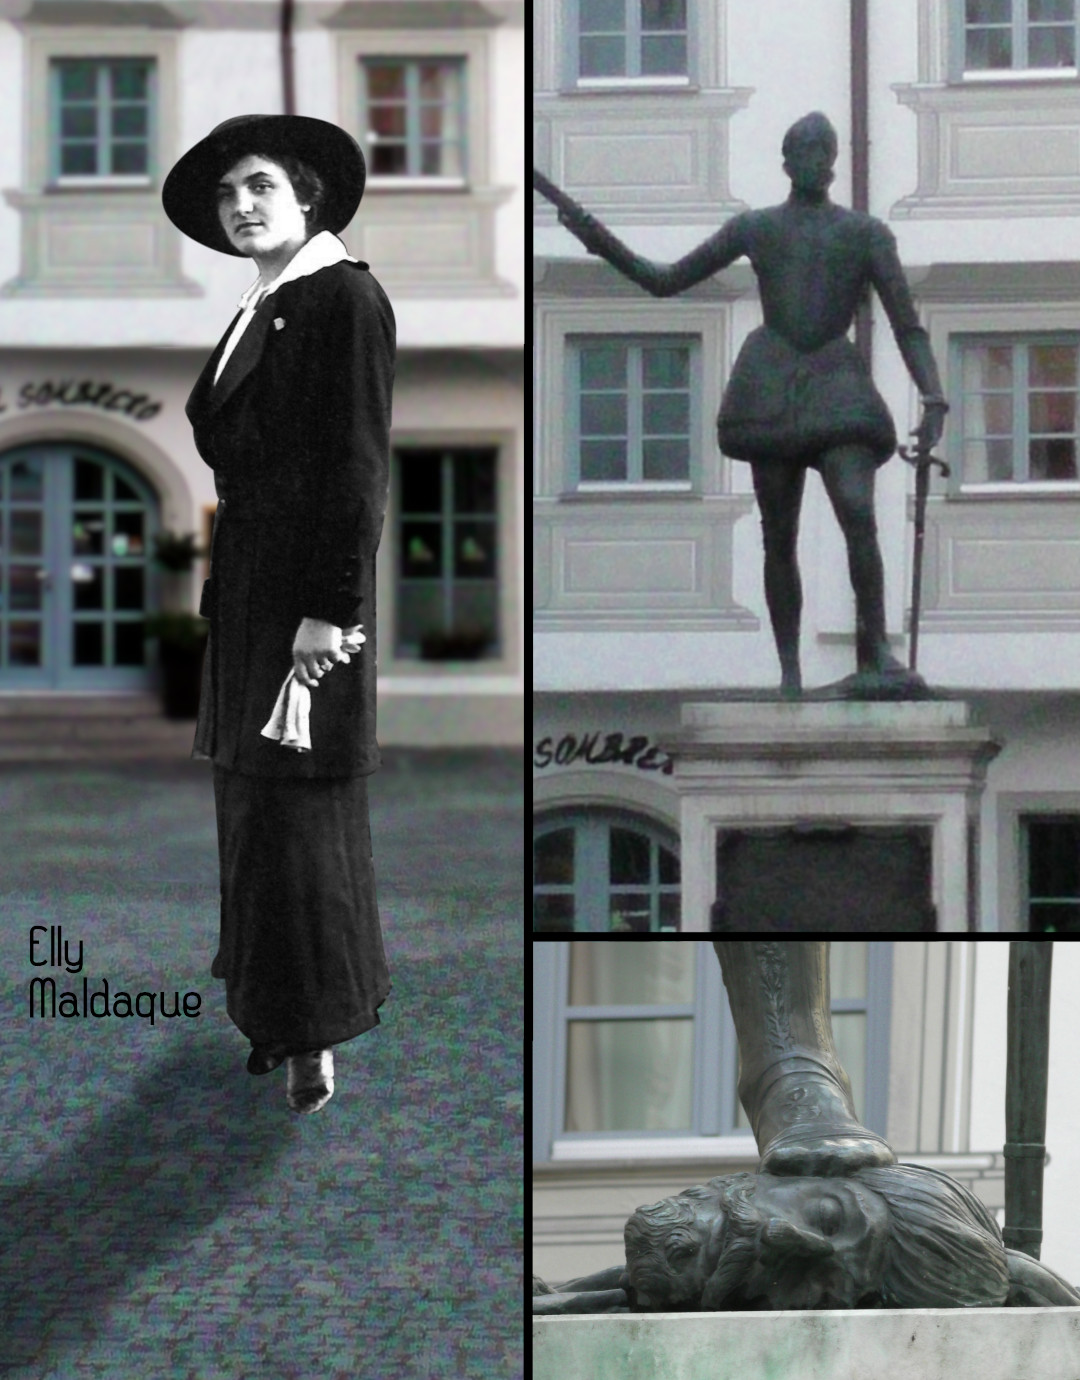 Collage einer Statue von Elly Maldaque neben dem Standbild von Don Juan mit abgeschlagenem Türkenkopf